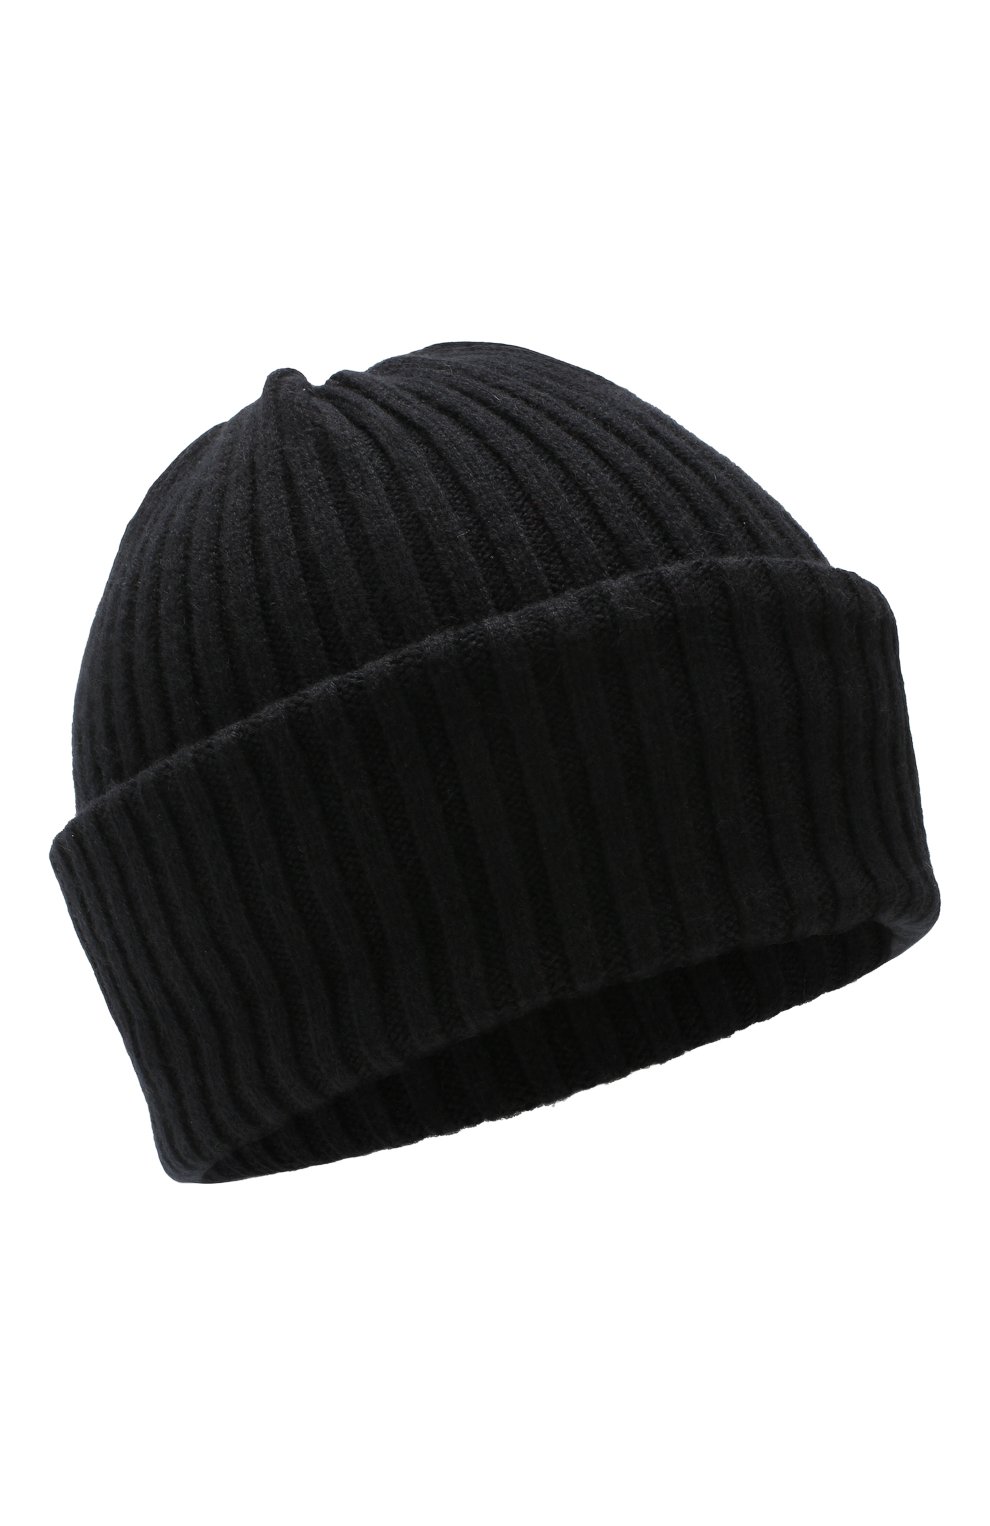 Женская кашемировая шапка BURBERRY черного цвета, арт. 8025890 | Фото 1 (Материал: Текстиль, Кашемир, Шерсть)